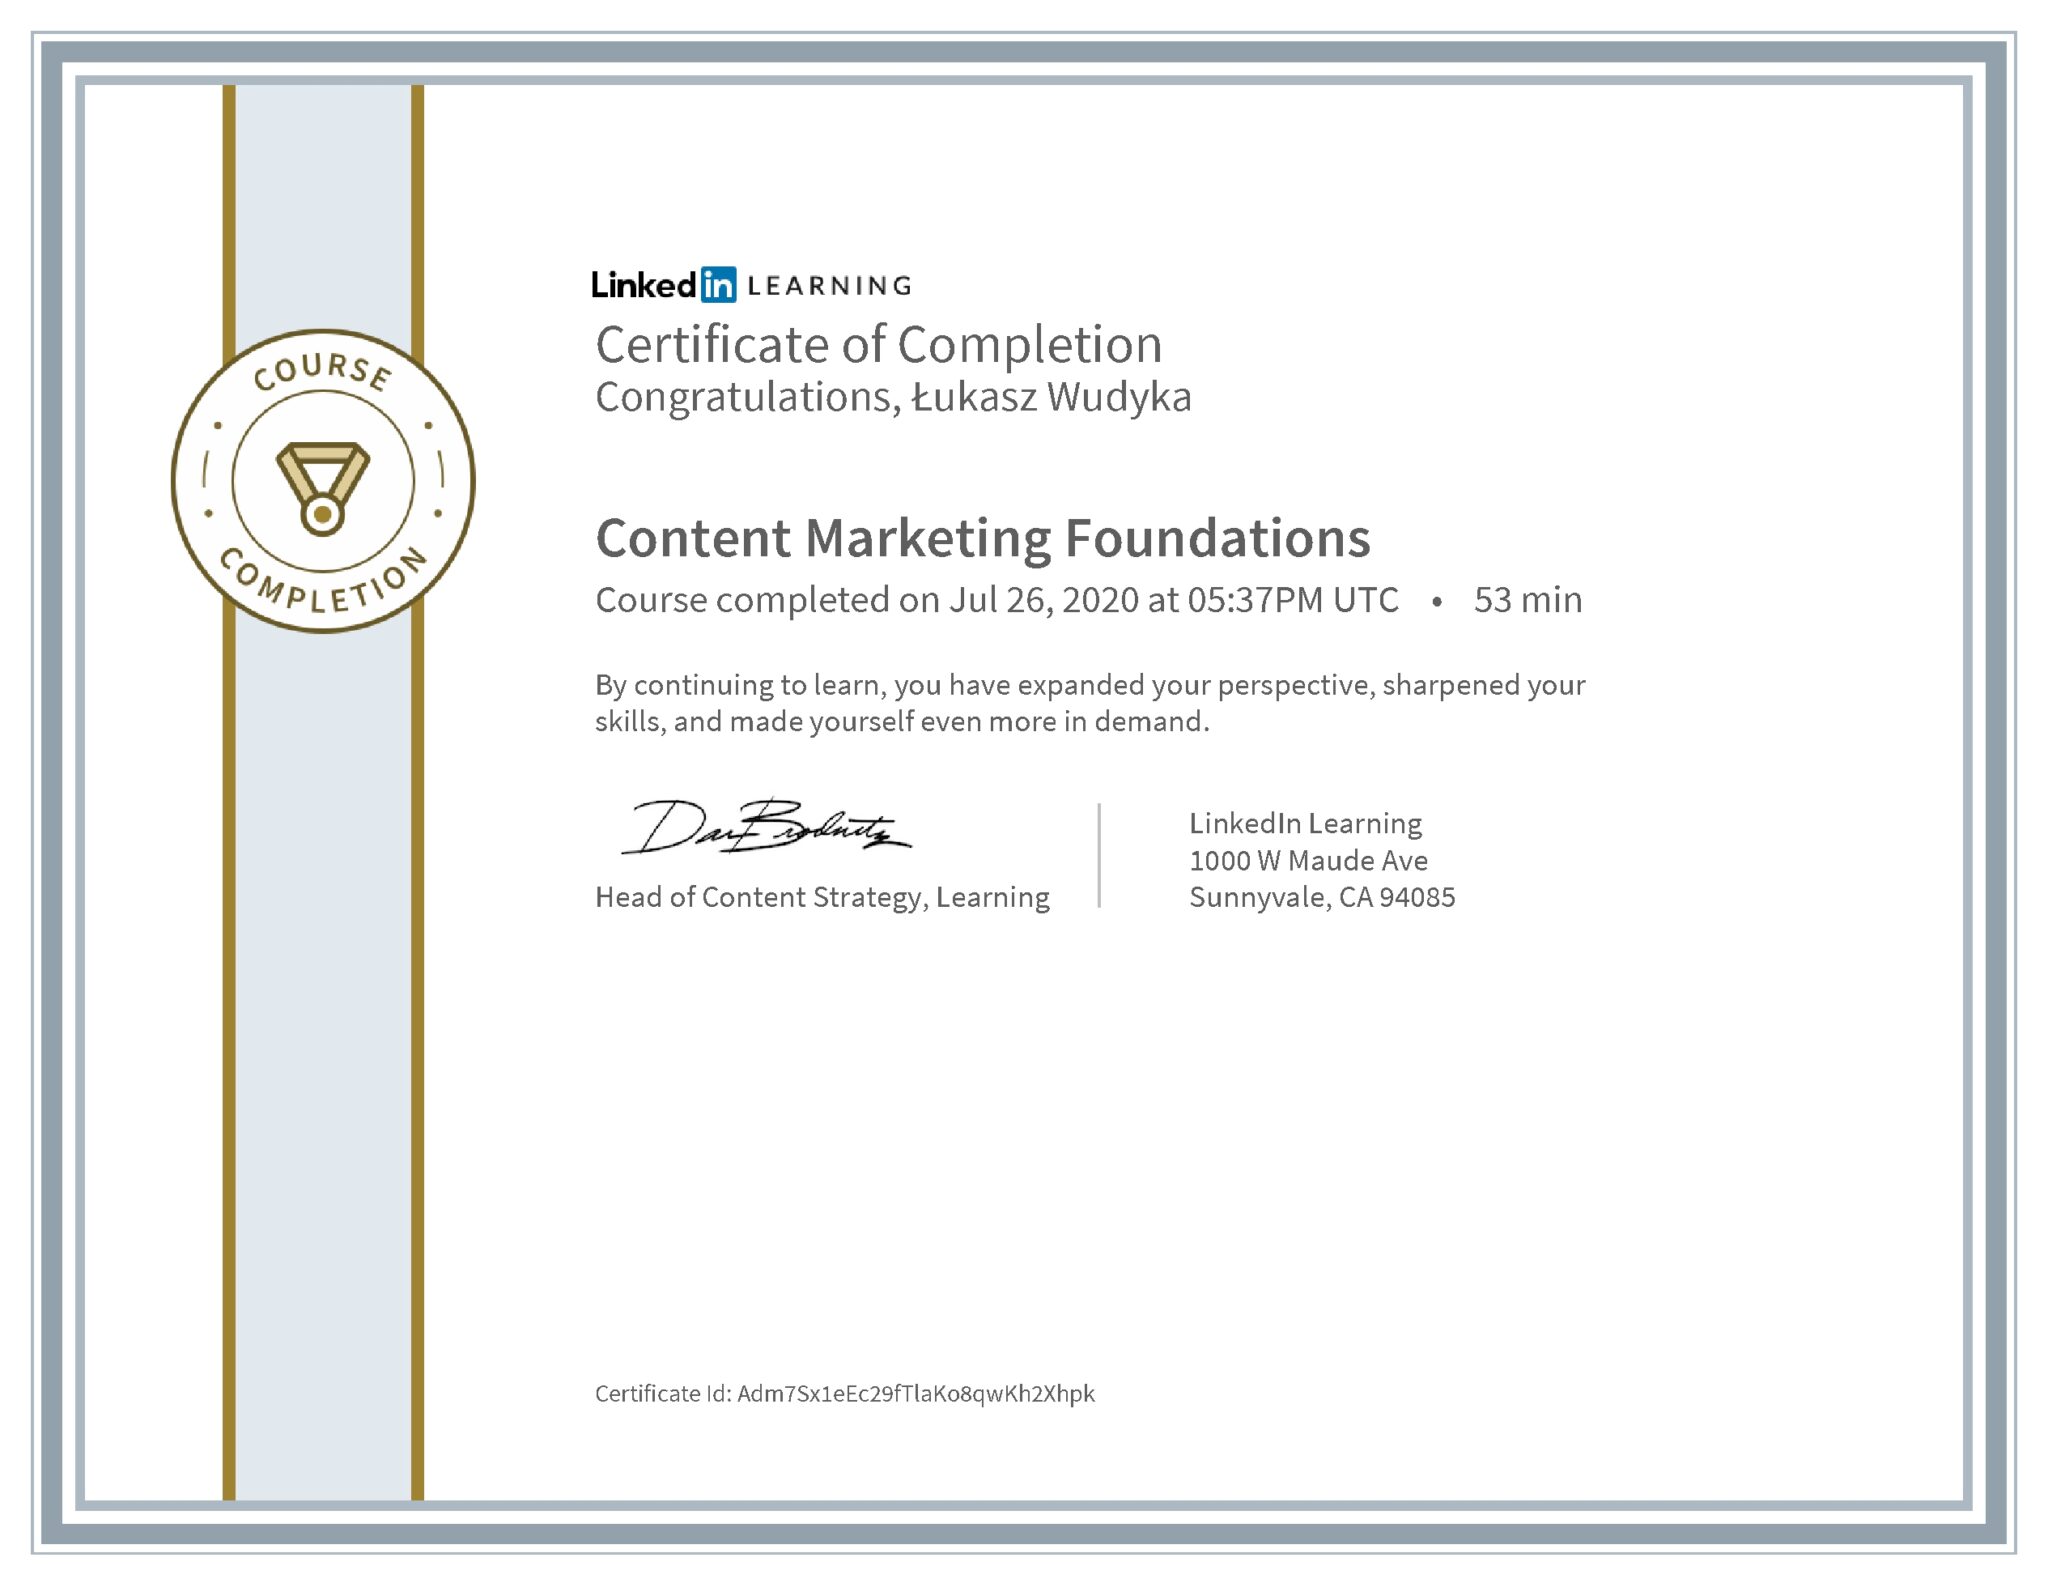 Łukasz Wudyka certyfikat LinkedIn Content Marketing Foundations